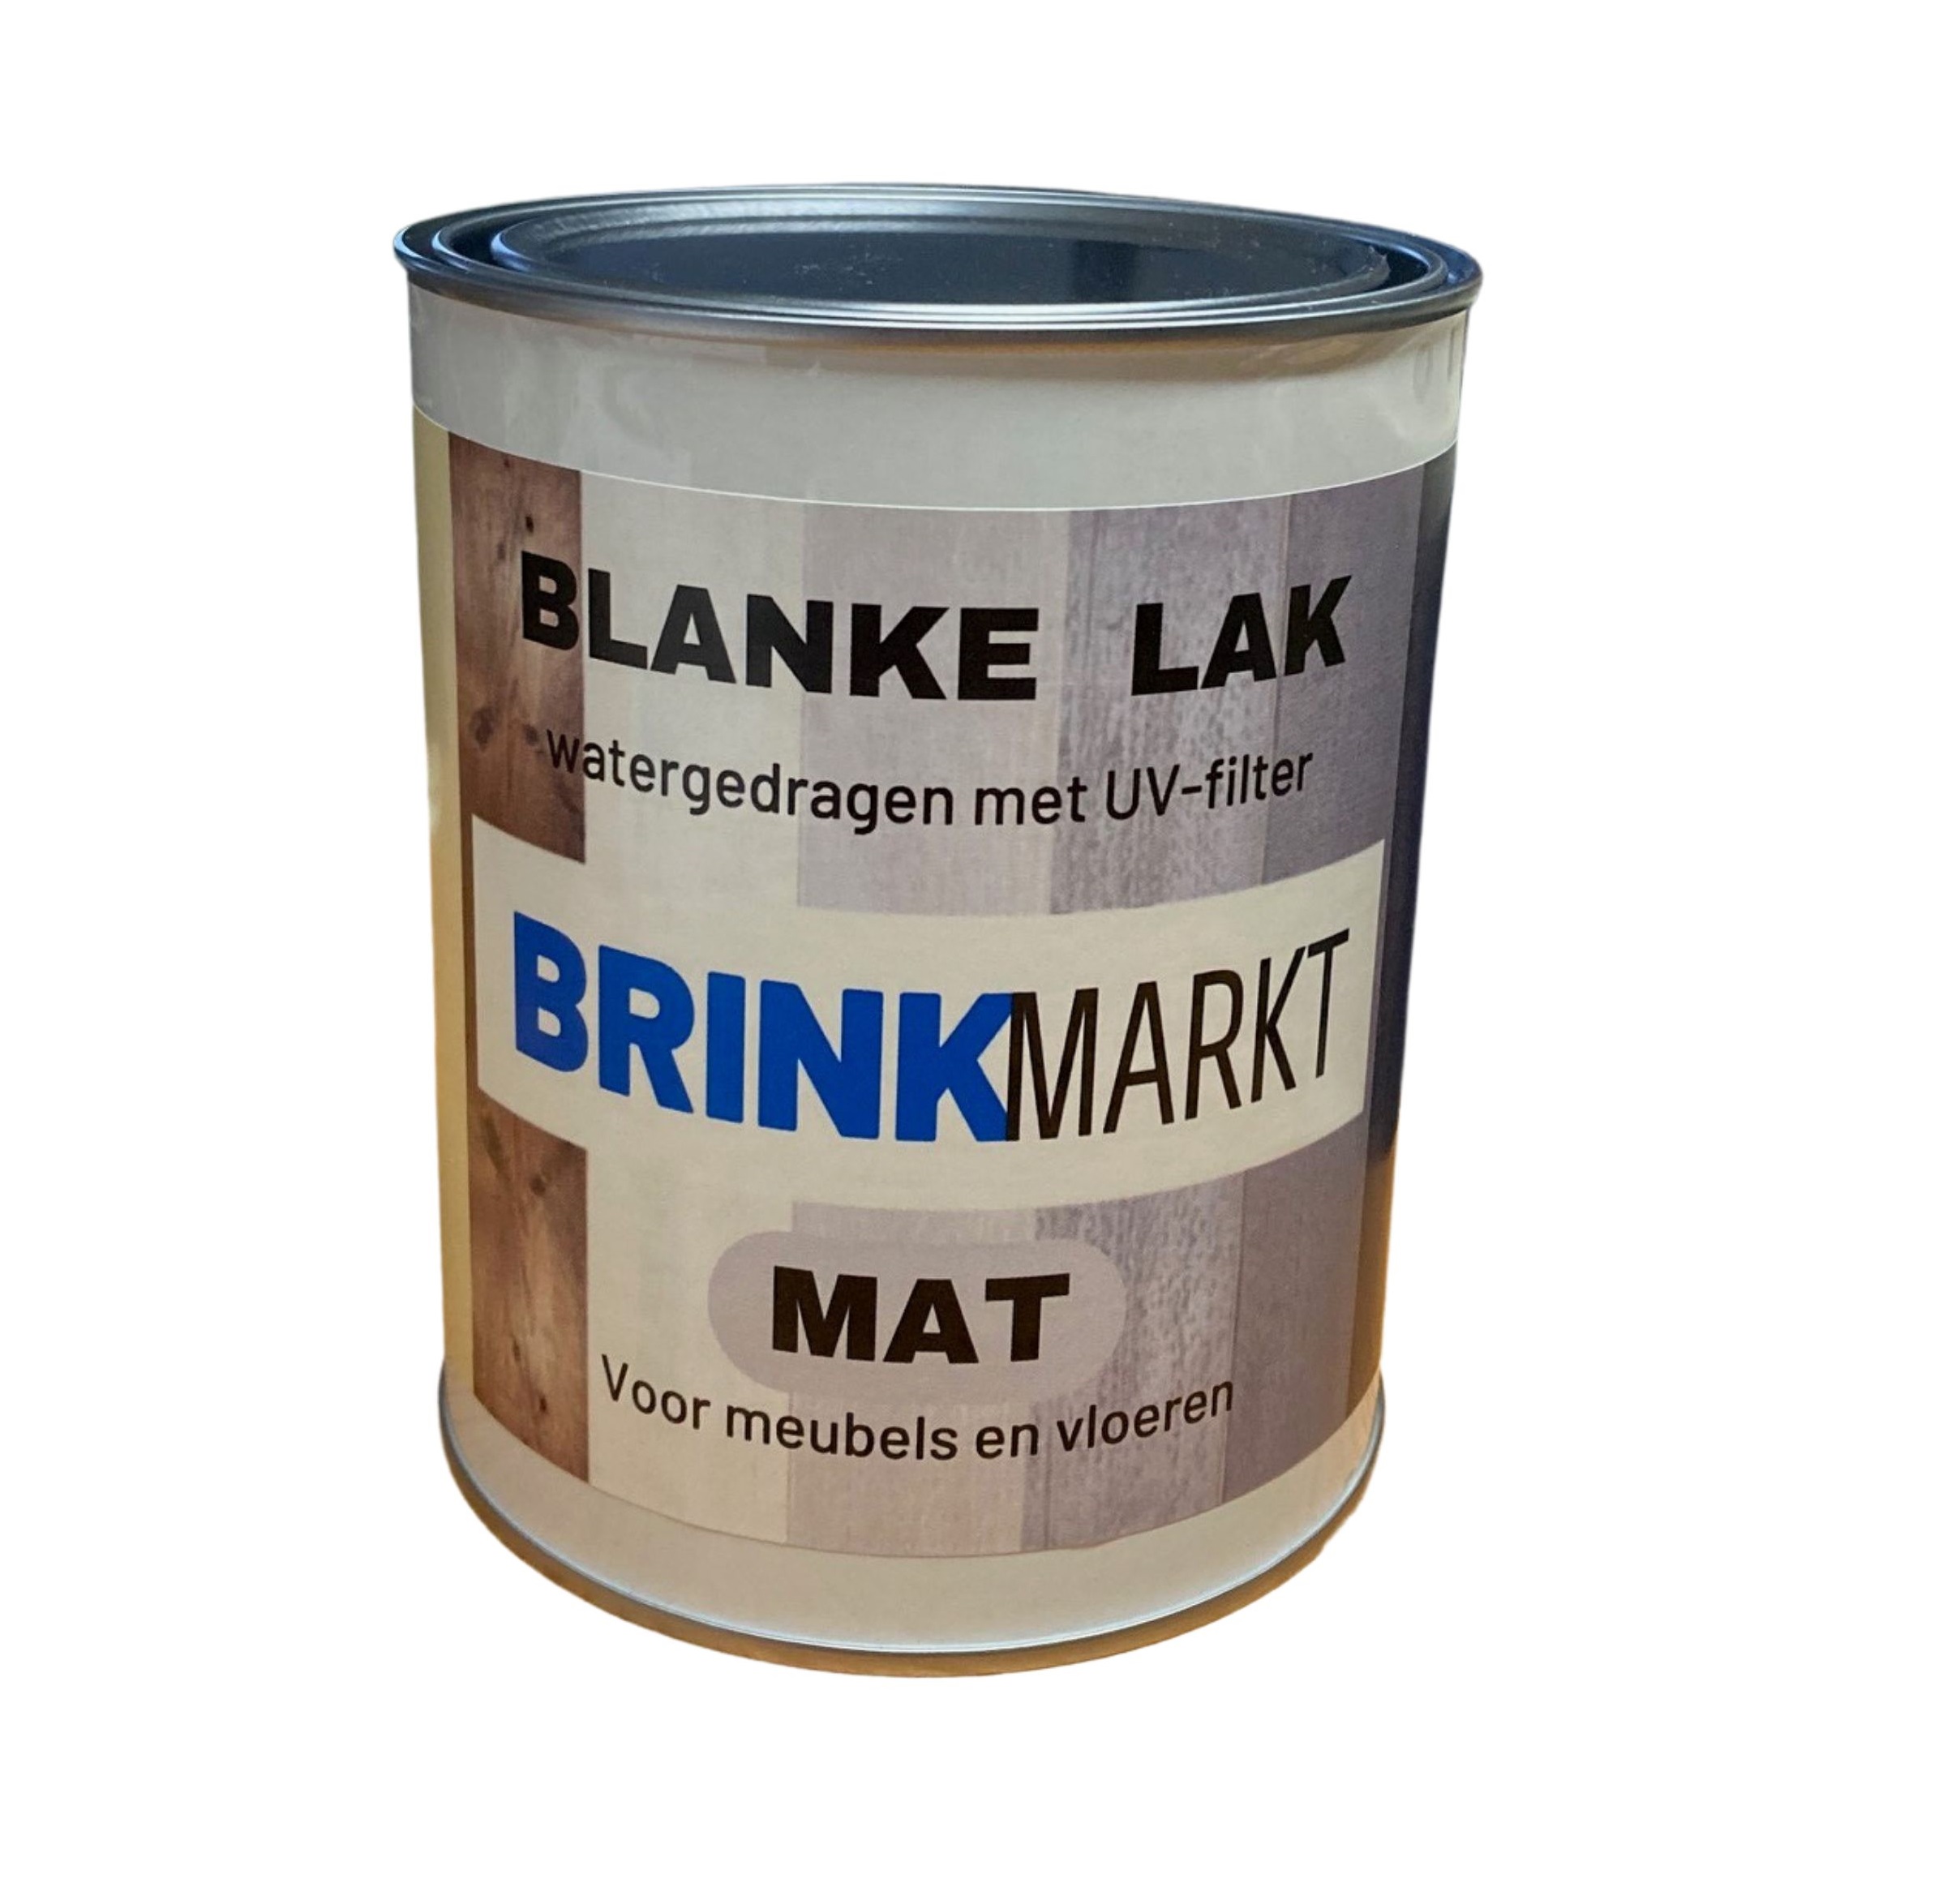 verkiezing Rally onduidelijk Blanke lak mat, zijdeglans en hoogglans | BRINKmarkt.nl